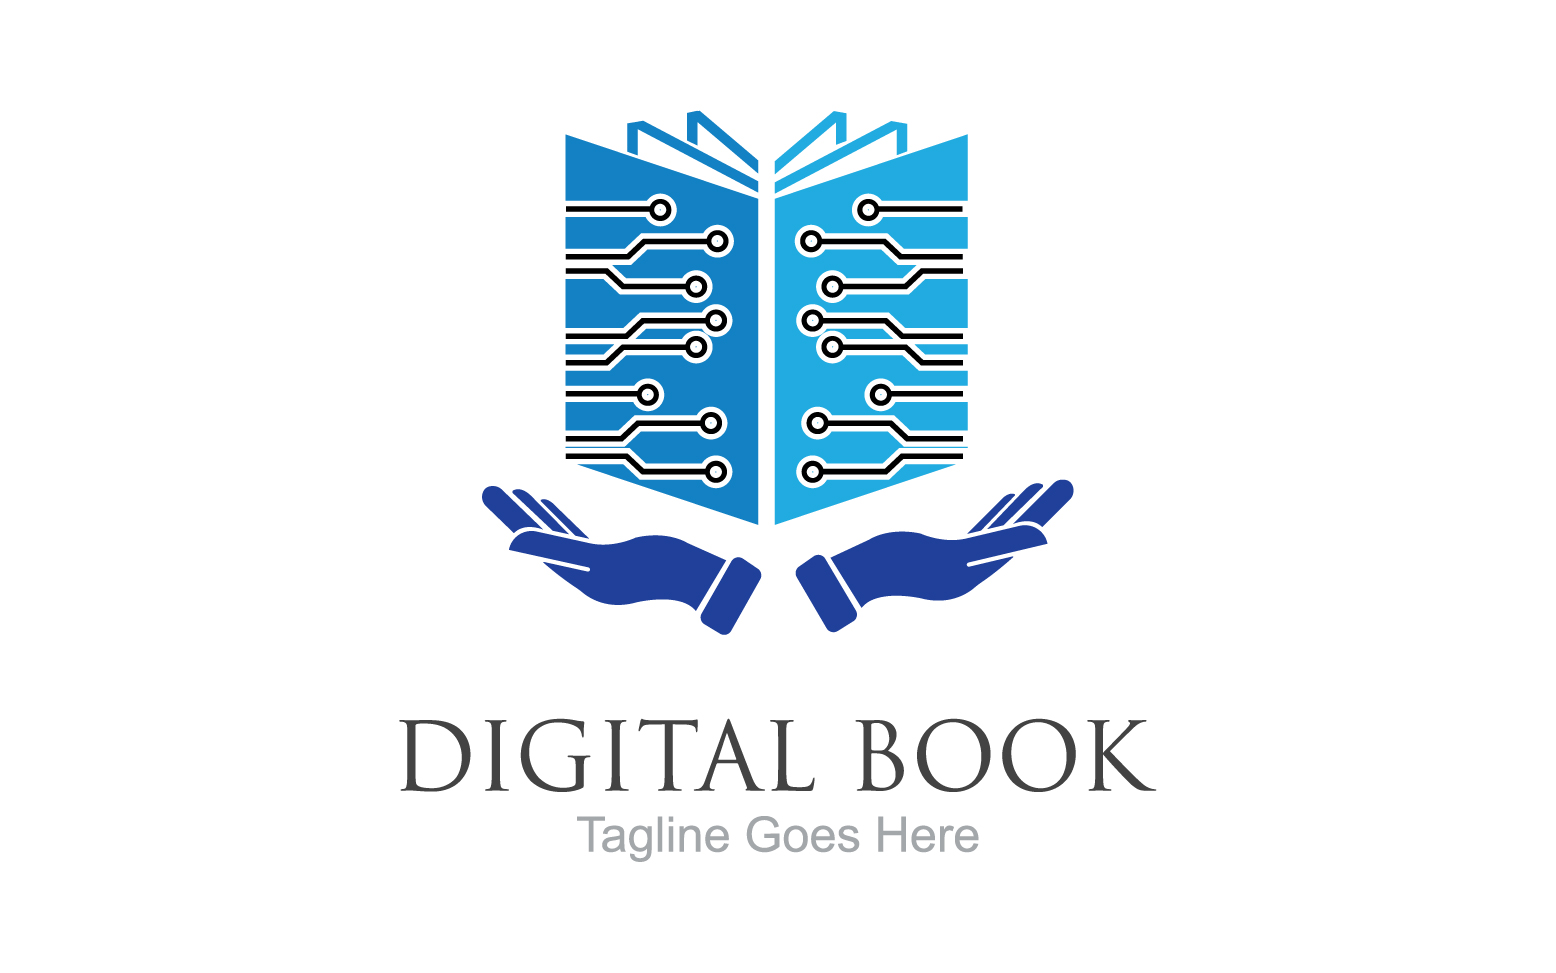 Book reading education logo vector v62